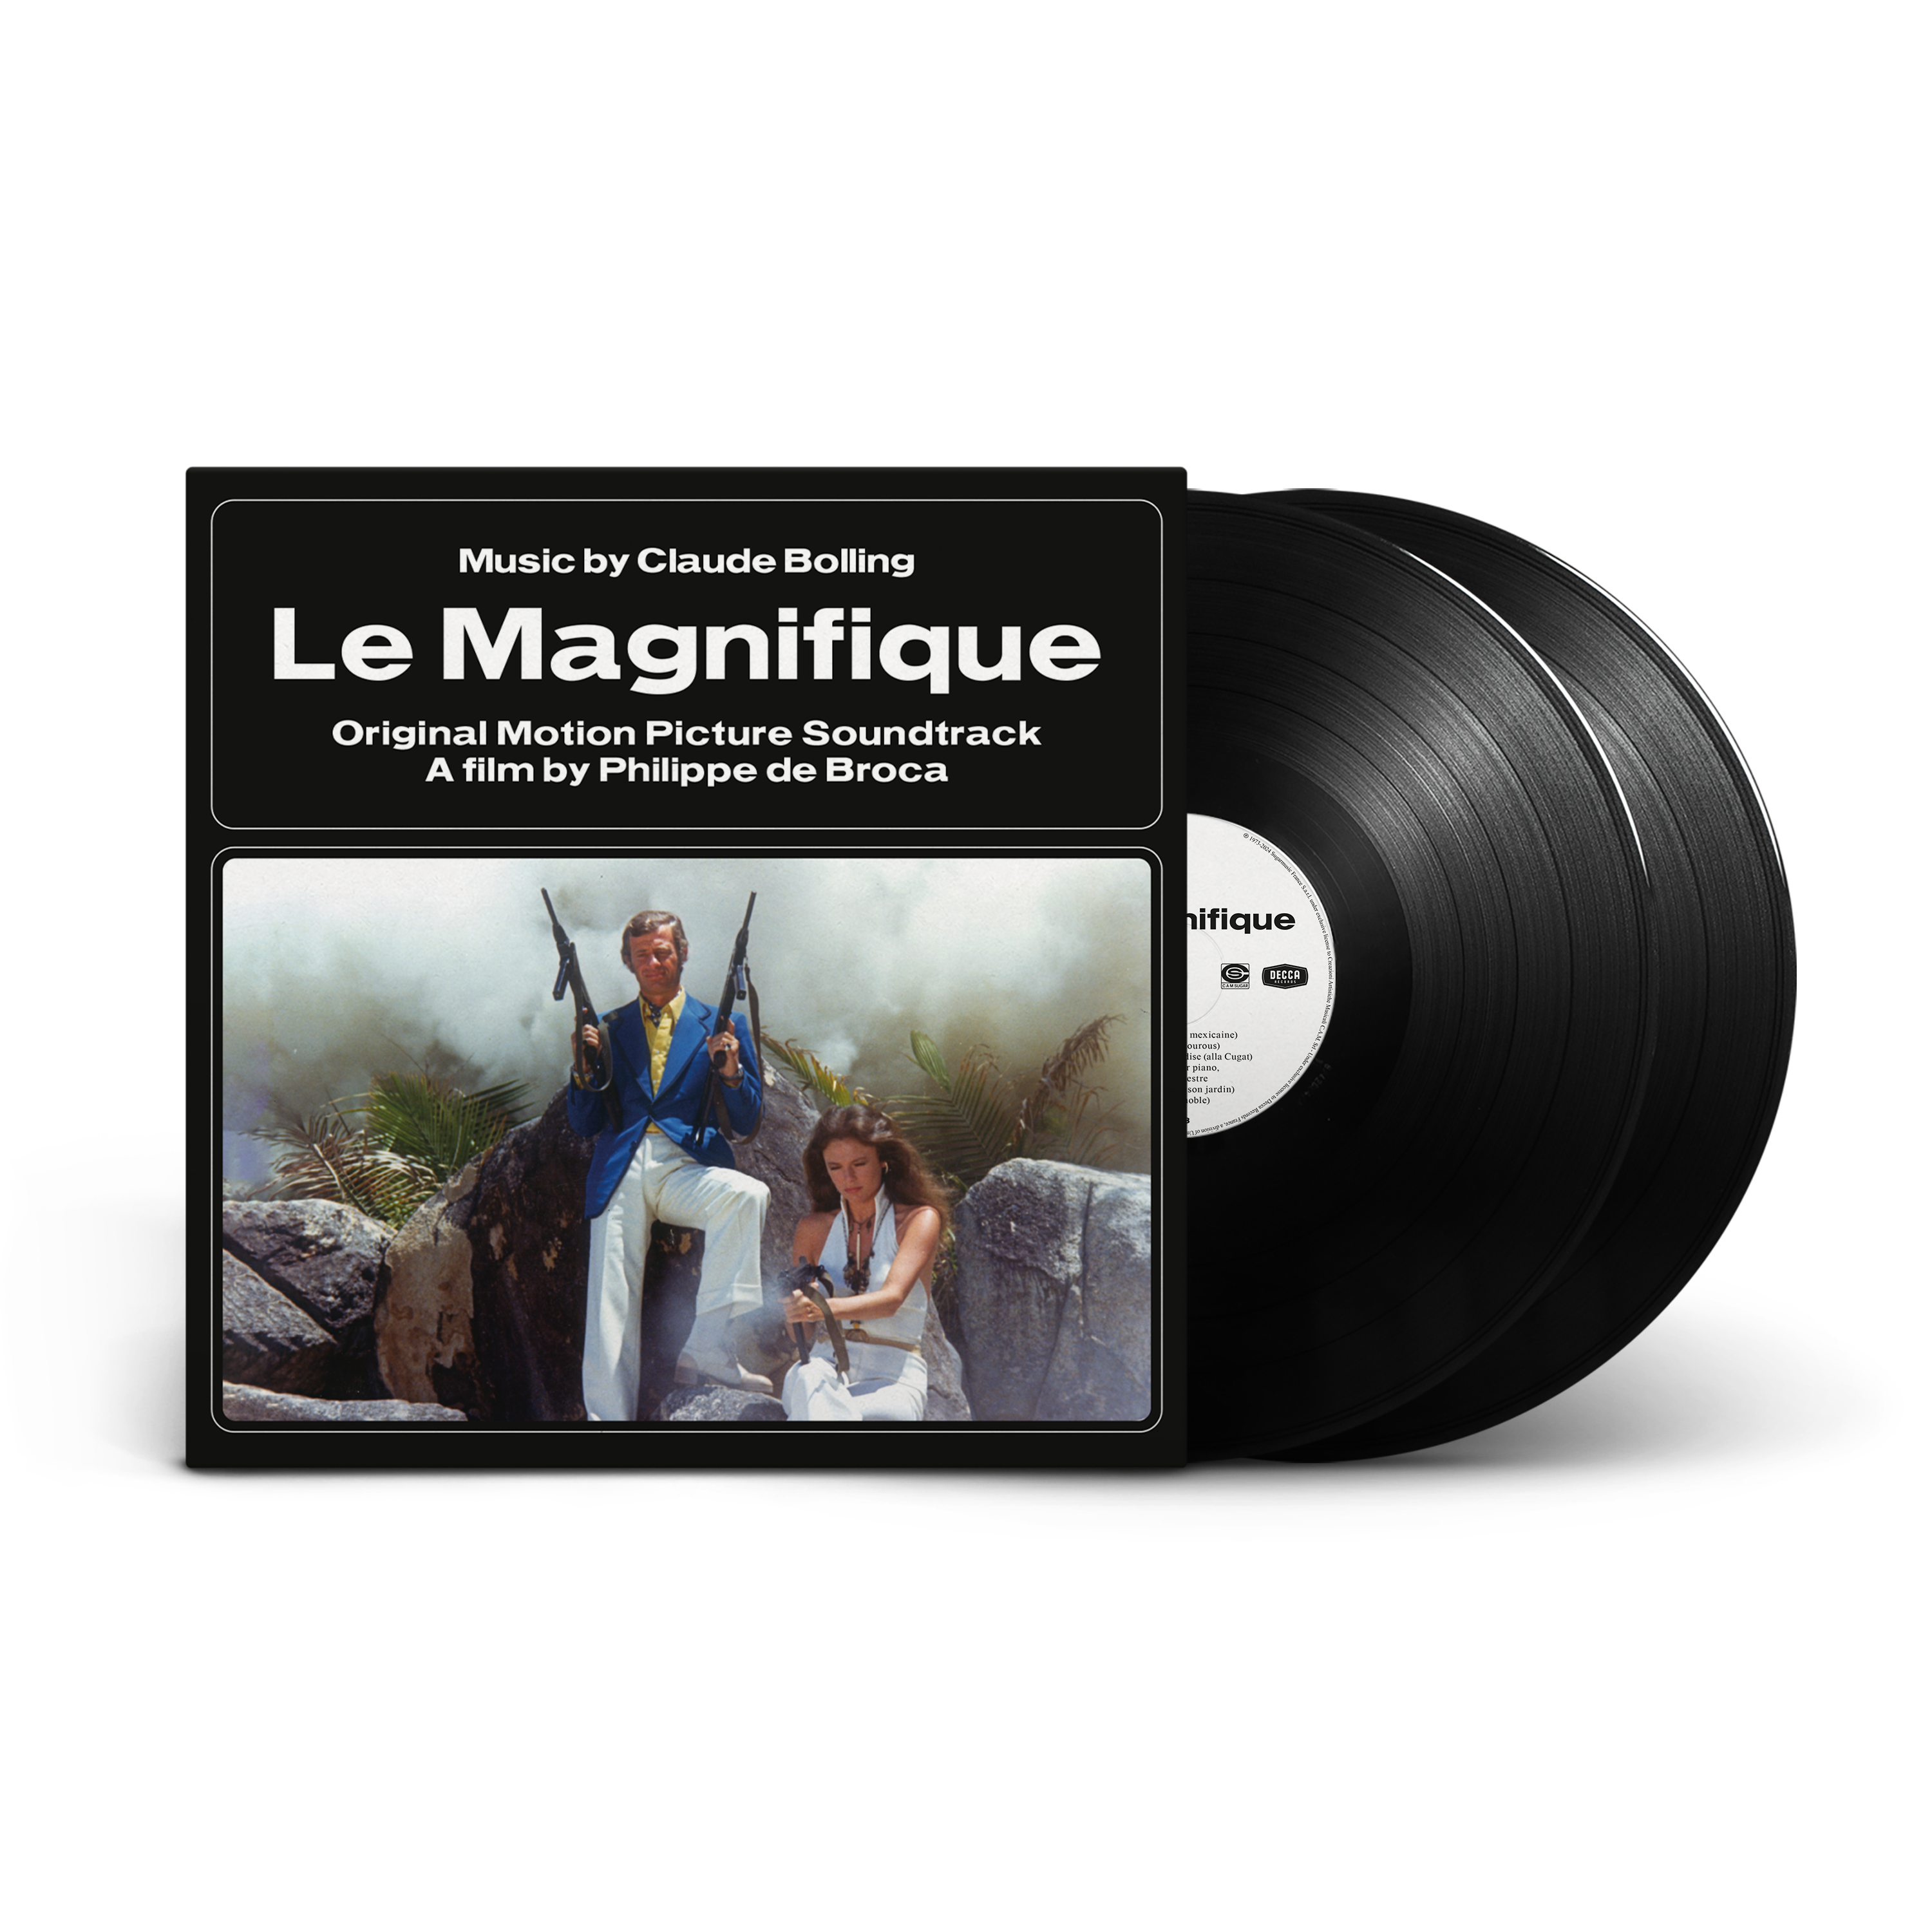 Manifique: albums, songs, playlists